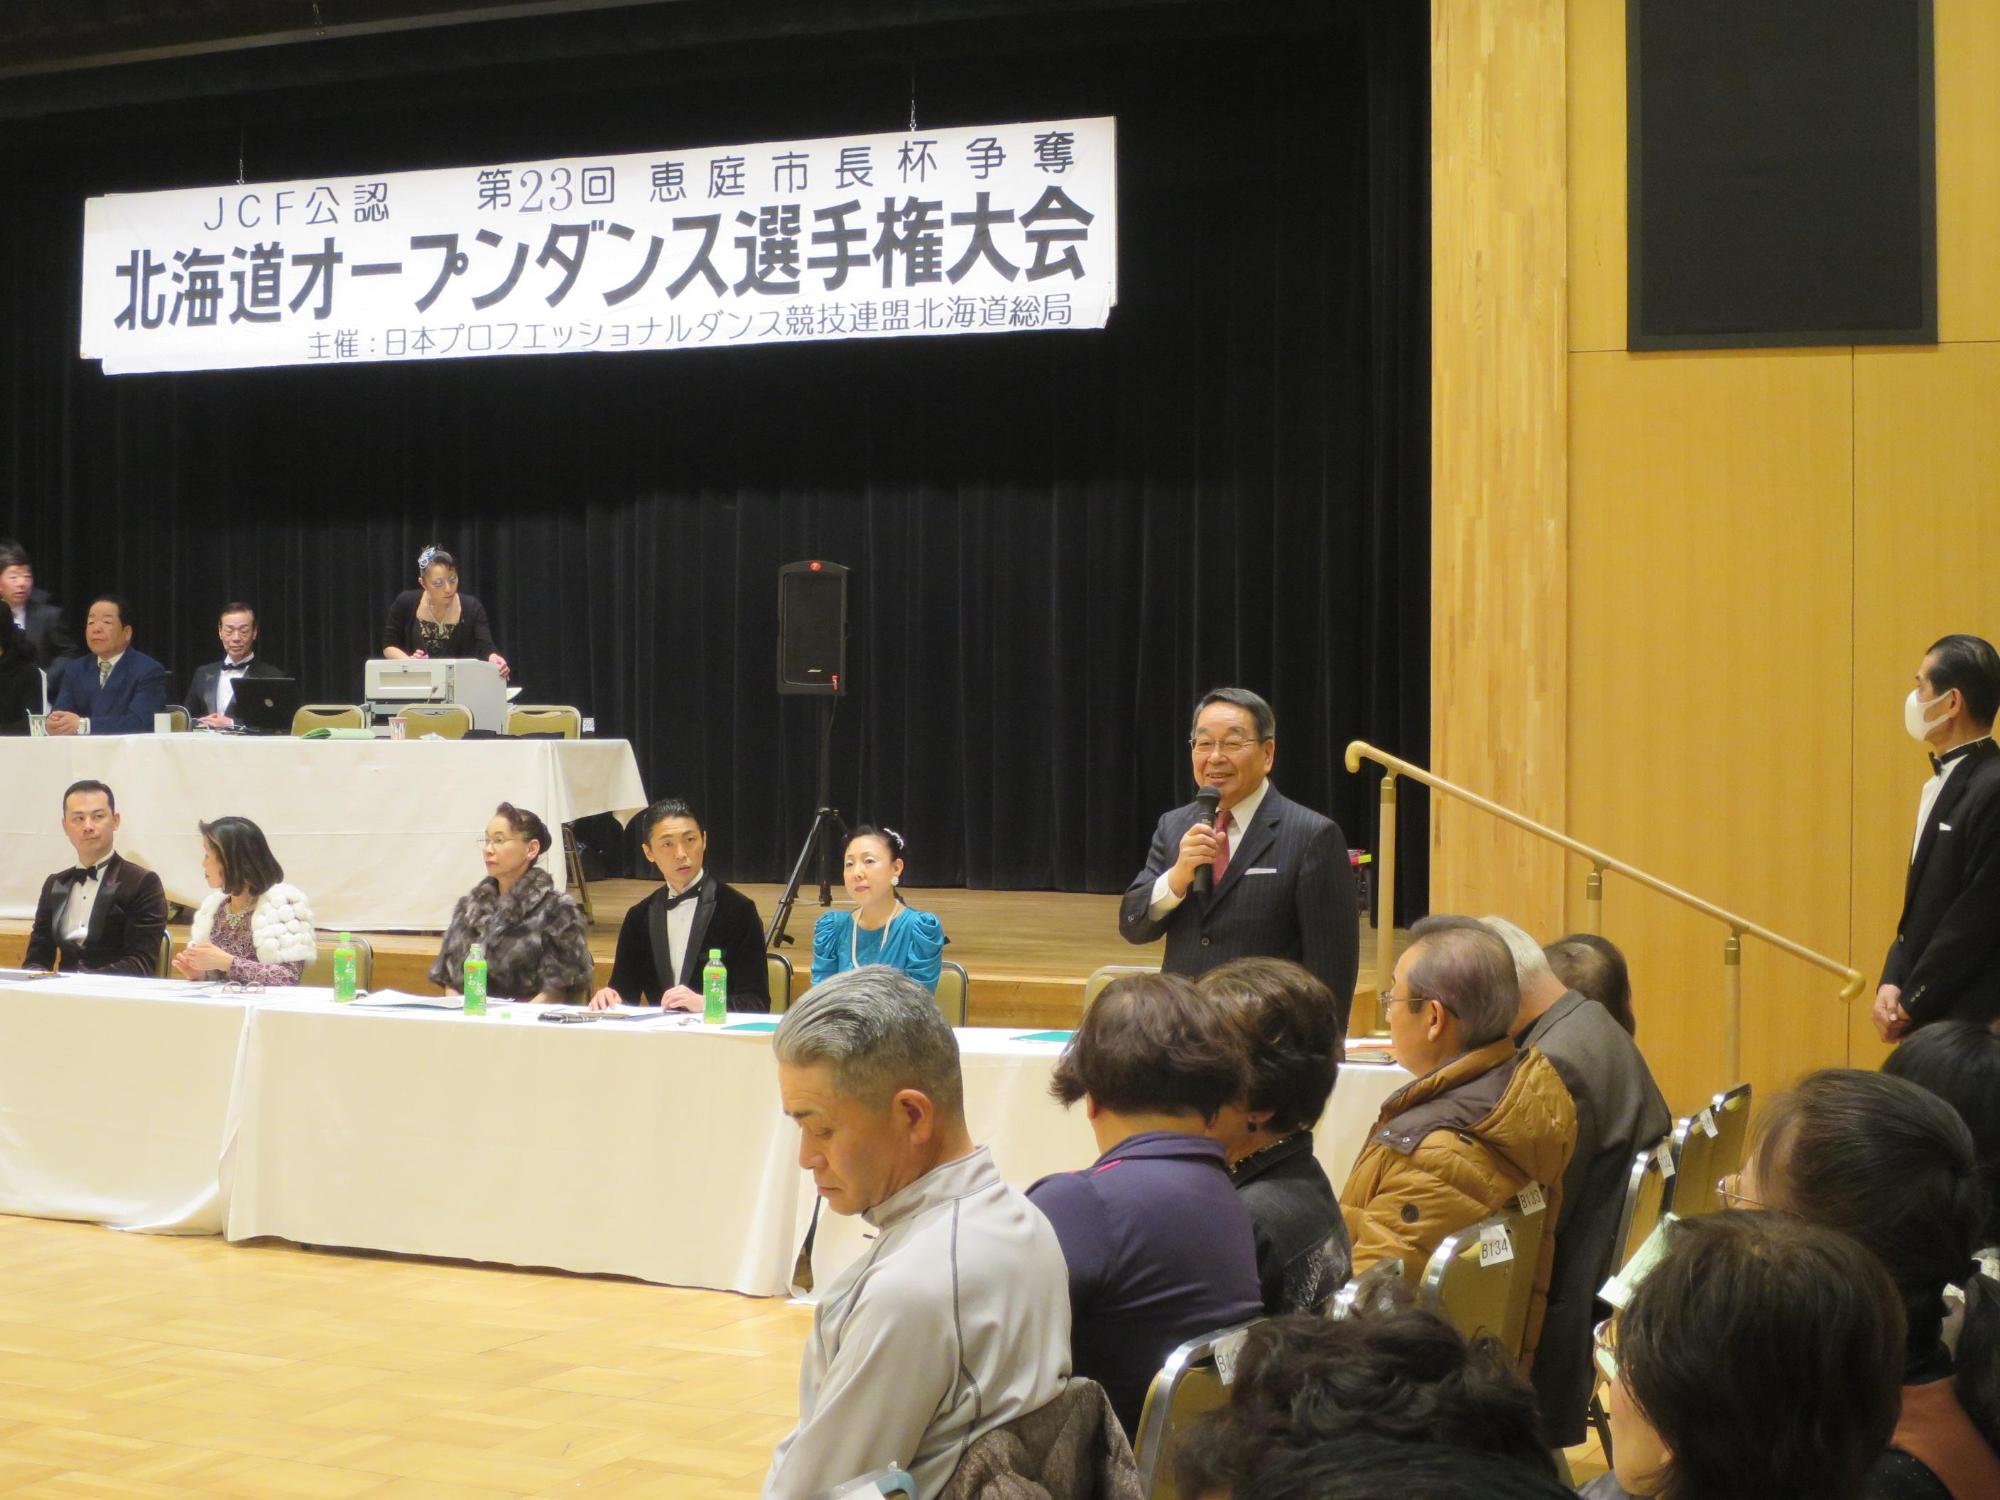 「北海道オープンダンス選手権大会」にて挨拶をしている原田市長の写真